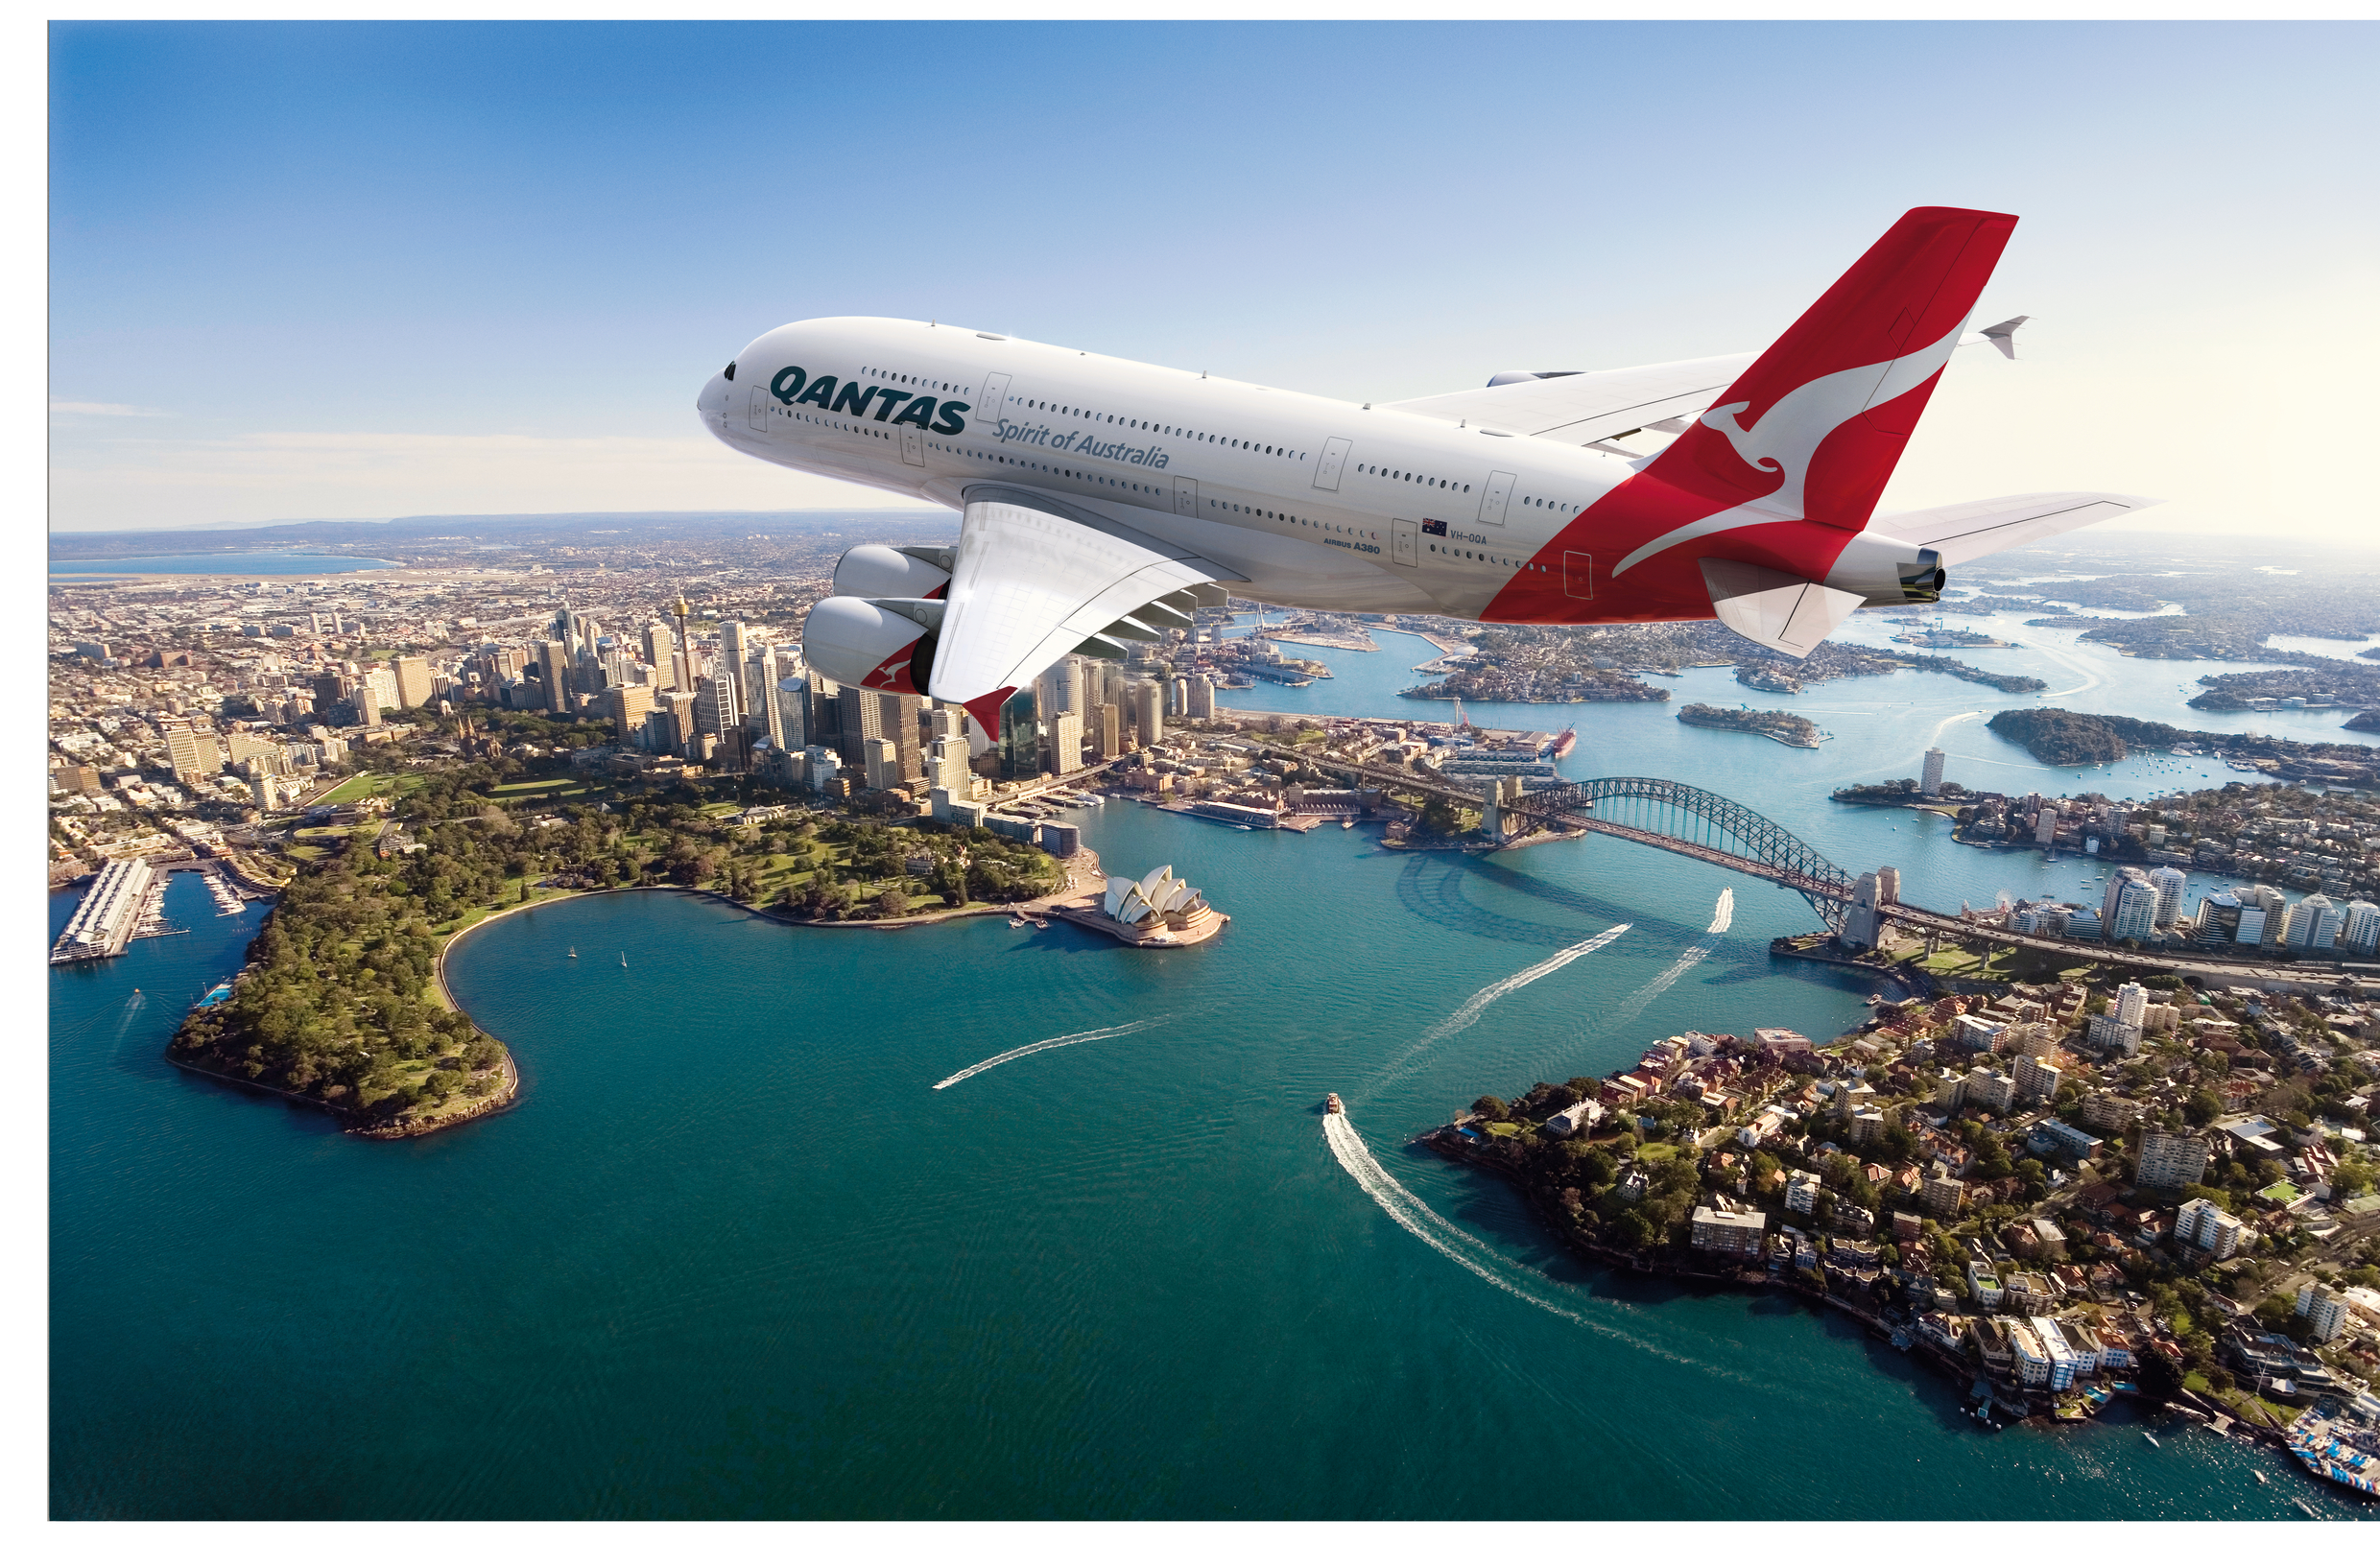 Qantas a380 sydney